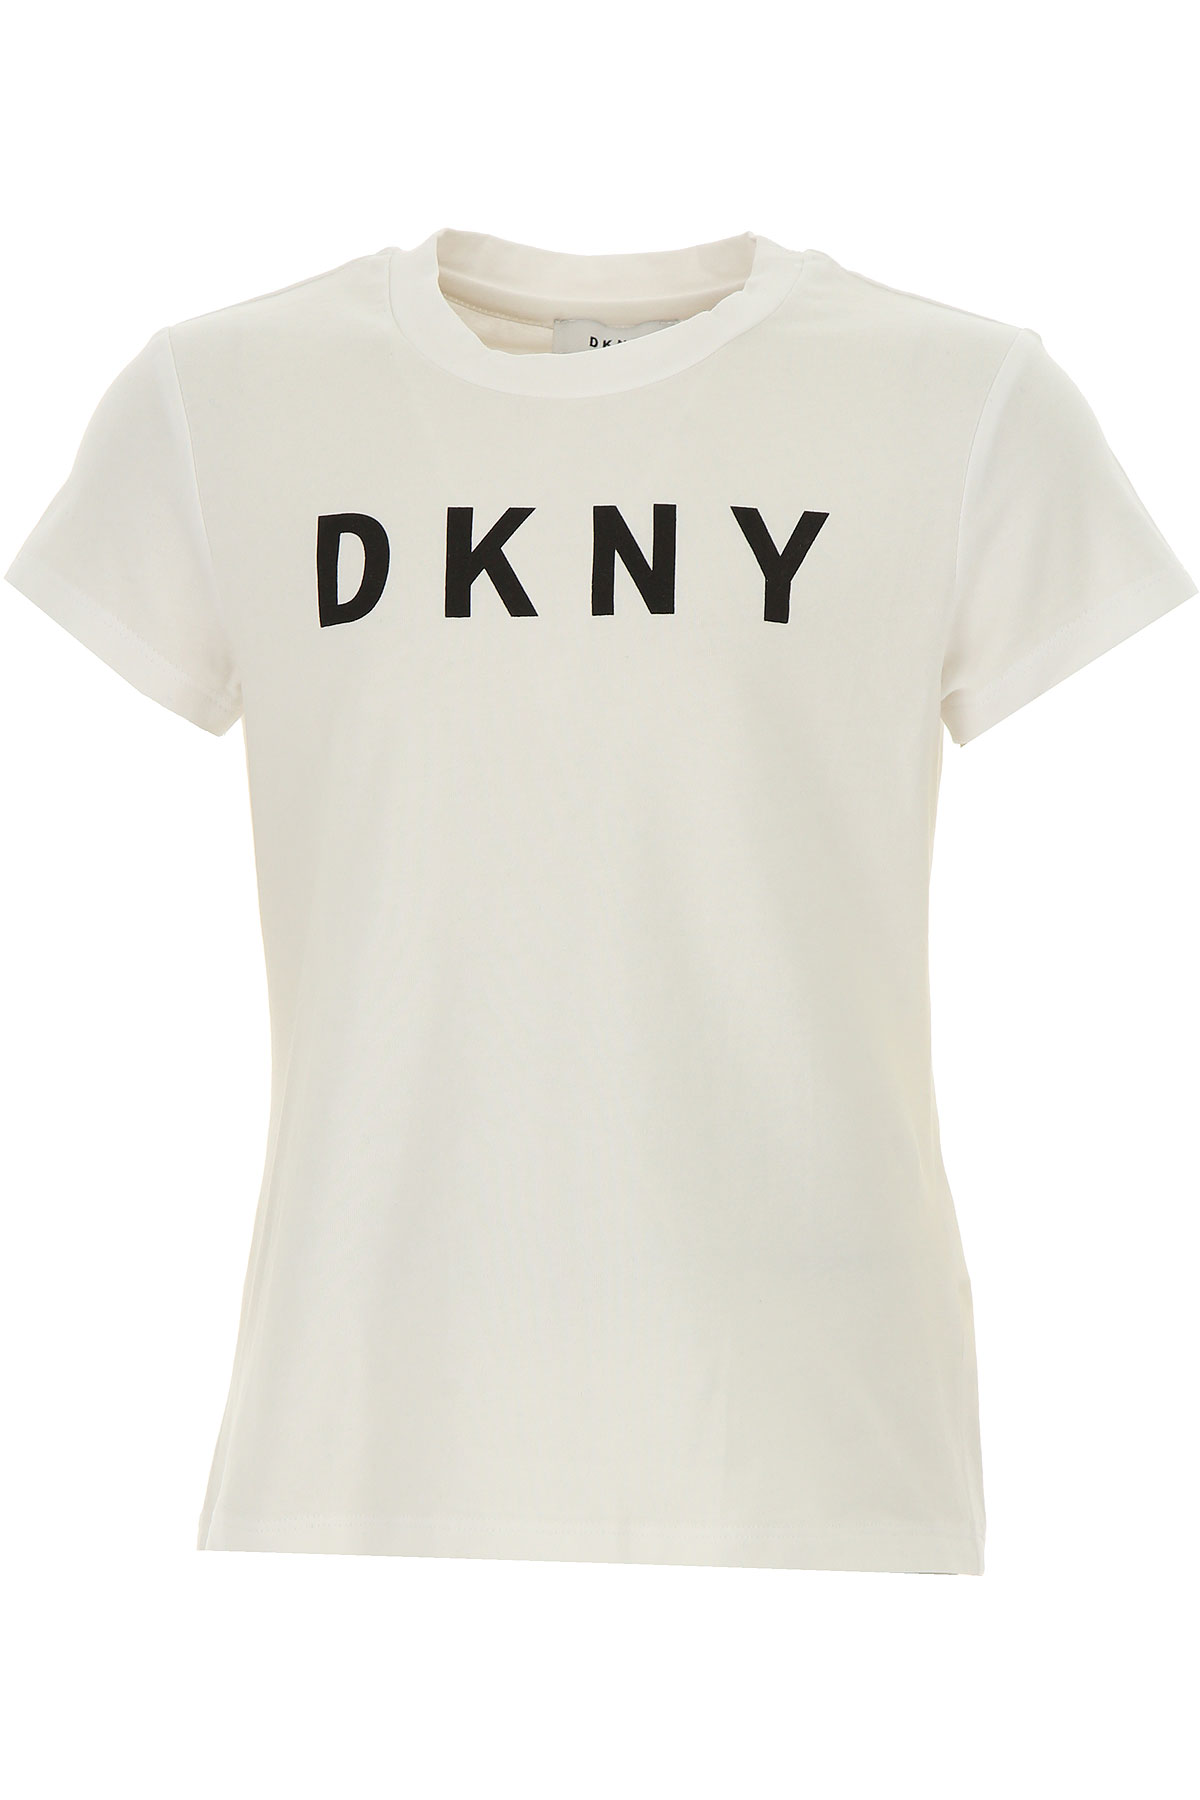 DKNY T-Shirt Enfant pour Fille, Blanc, Coton, 2017, 10Y 12Y 14Y 16Y 4Y 6Y 8Y